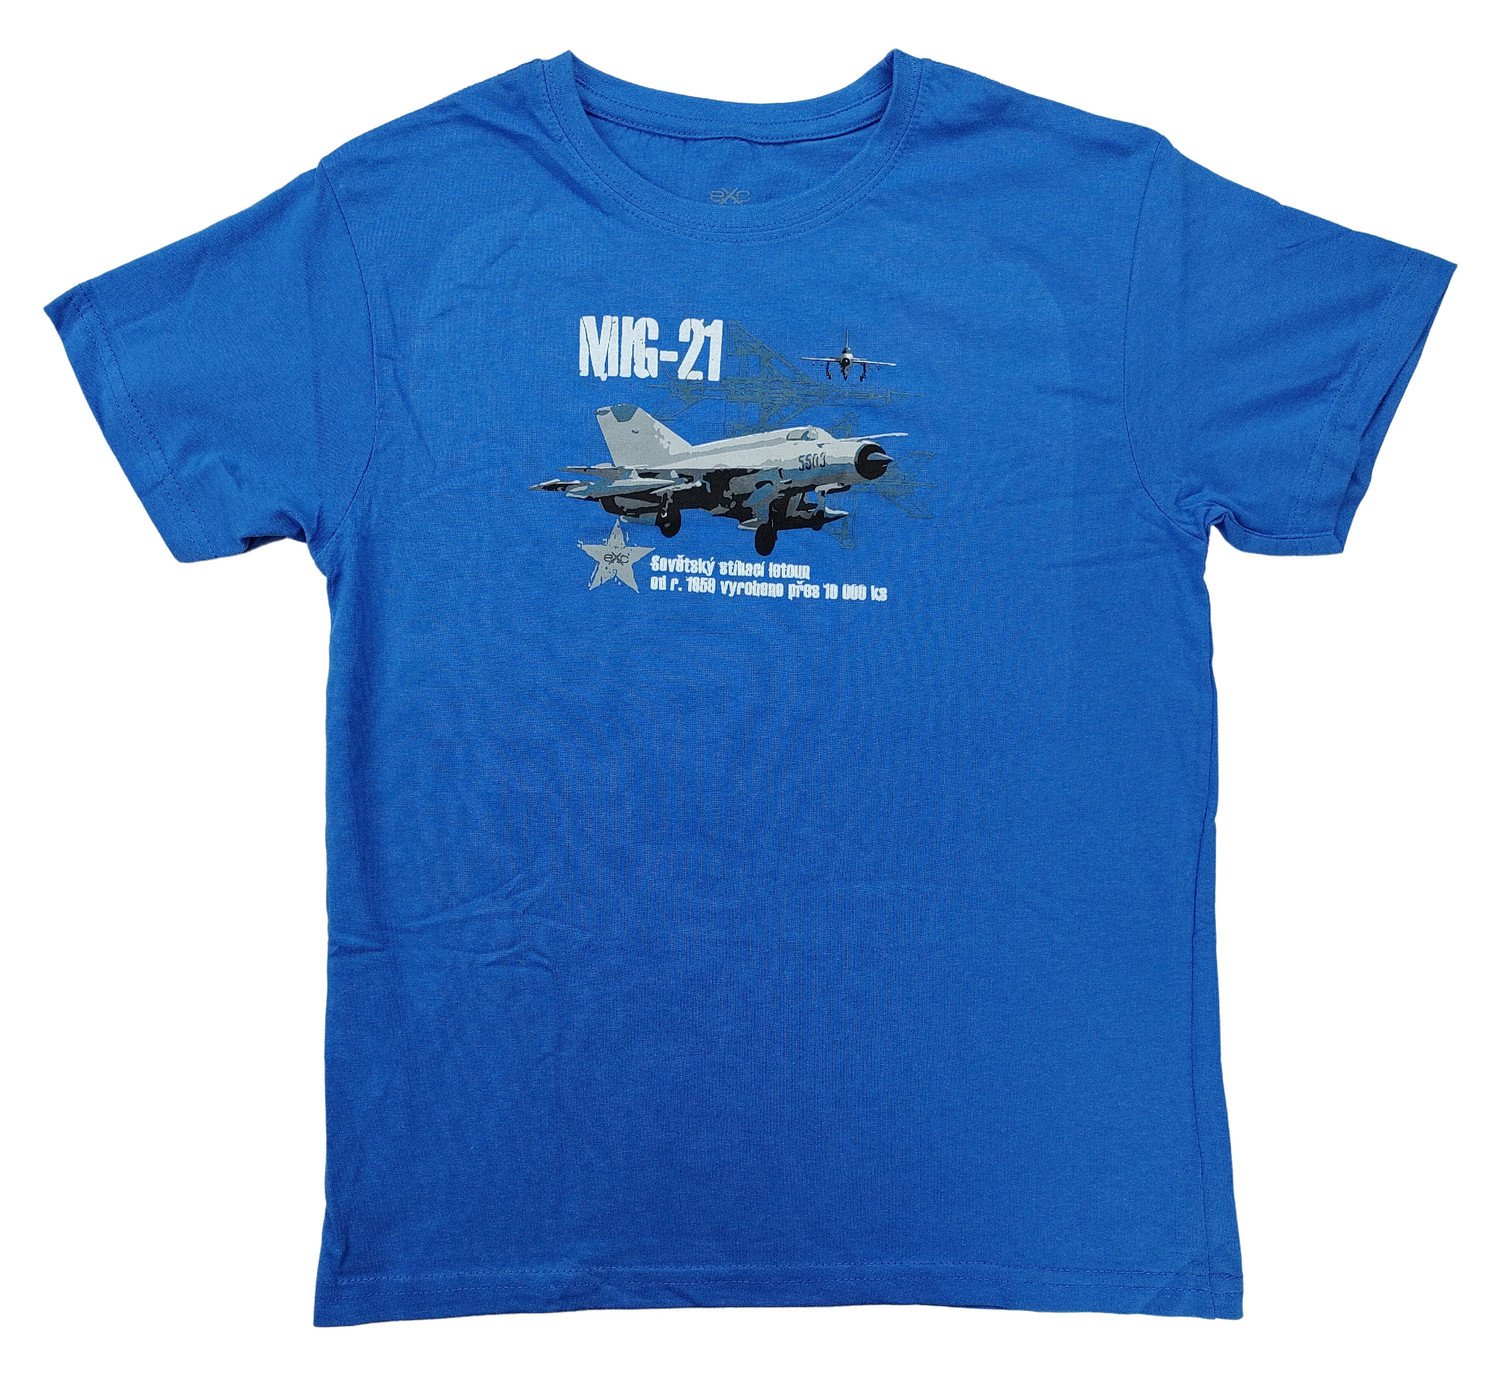 Triko dětské s potiskem MIG-21 sovětský stíhací letoun Mikojan-Gurevič modré EXC® Vyberte velikost: 134